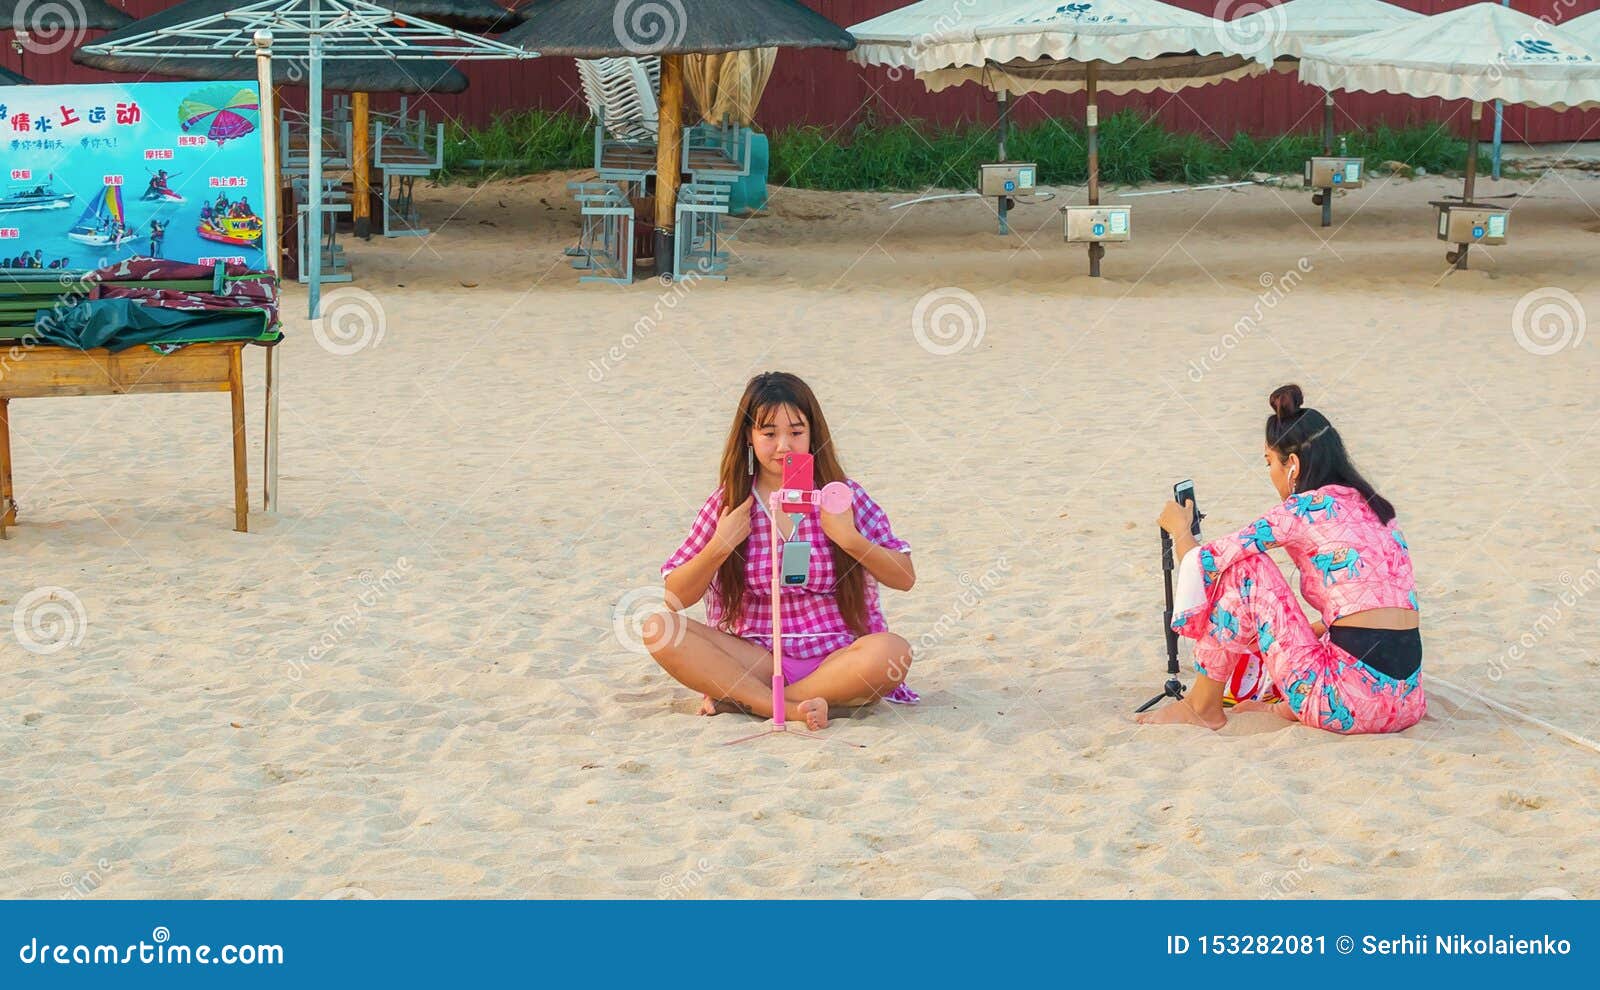 Sanya, Hainan, China - Mei 17, 2019: Twee jonge Chinese meisjes op het strand, die op het zand zitten, nemen een selfie Online is de rapportering een populaire activiteit onder de Chinese jeugd